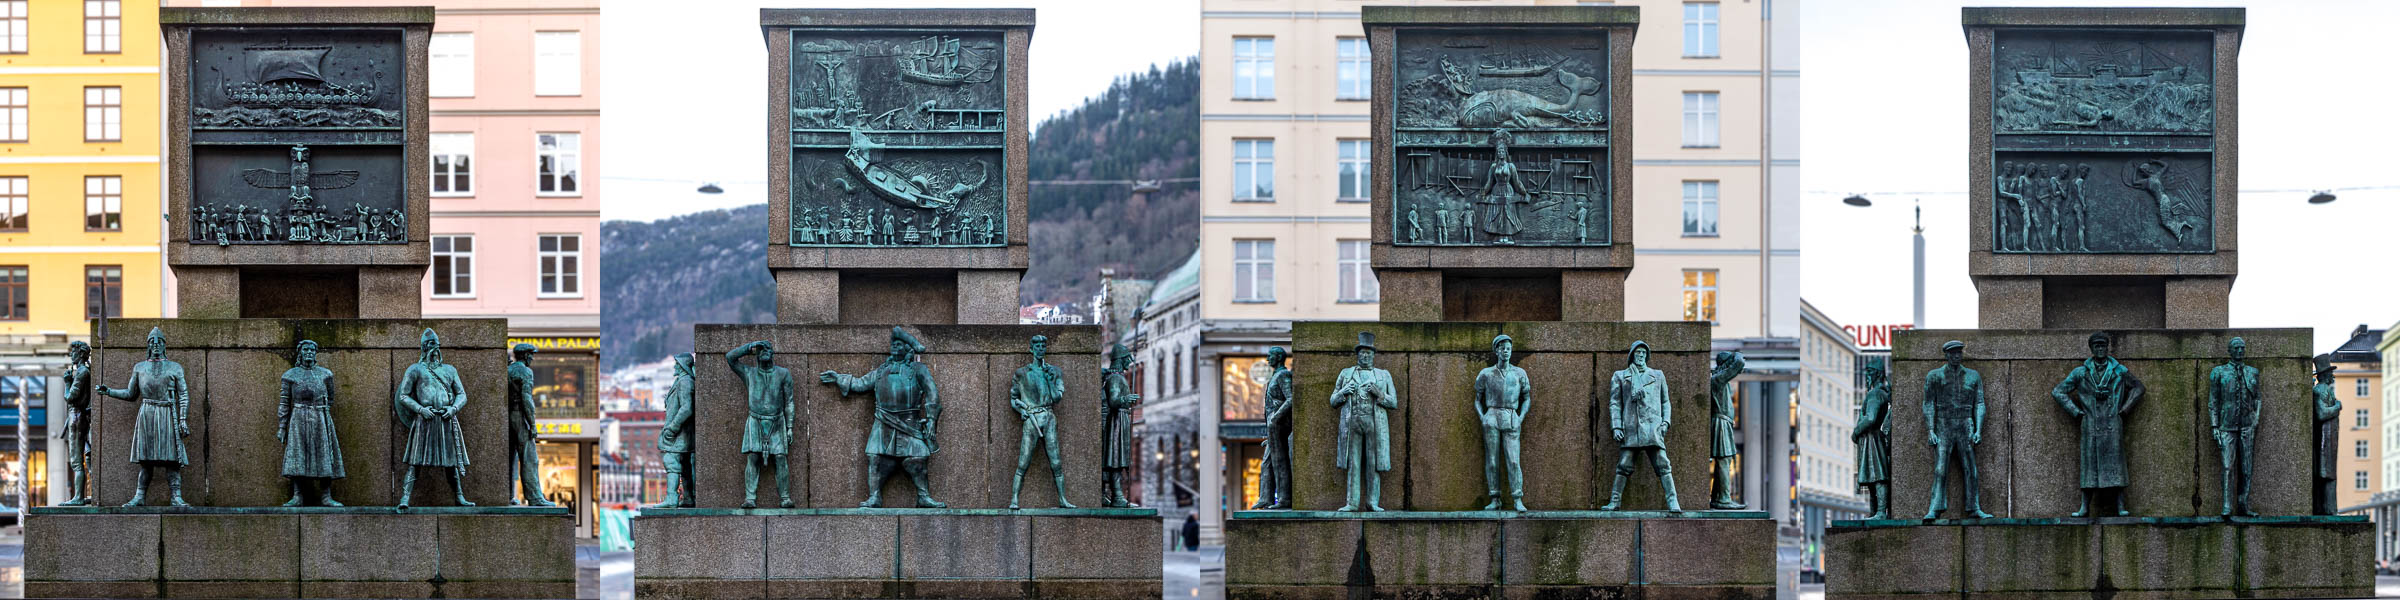 Bergen : Sjøfartsmonumentet (monument aux marins)